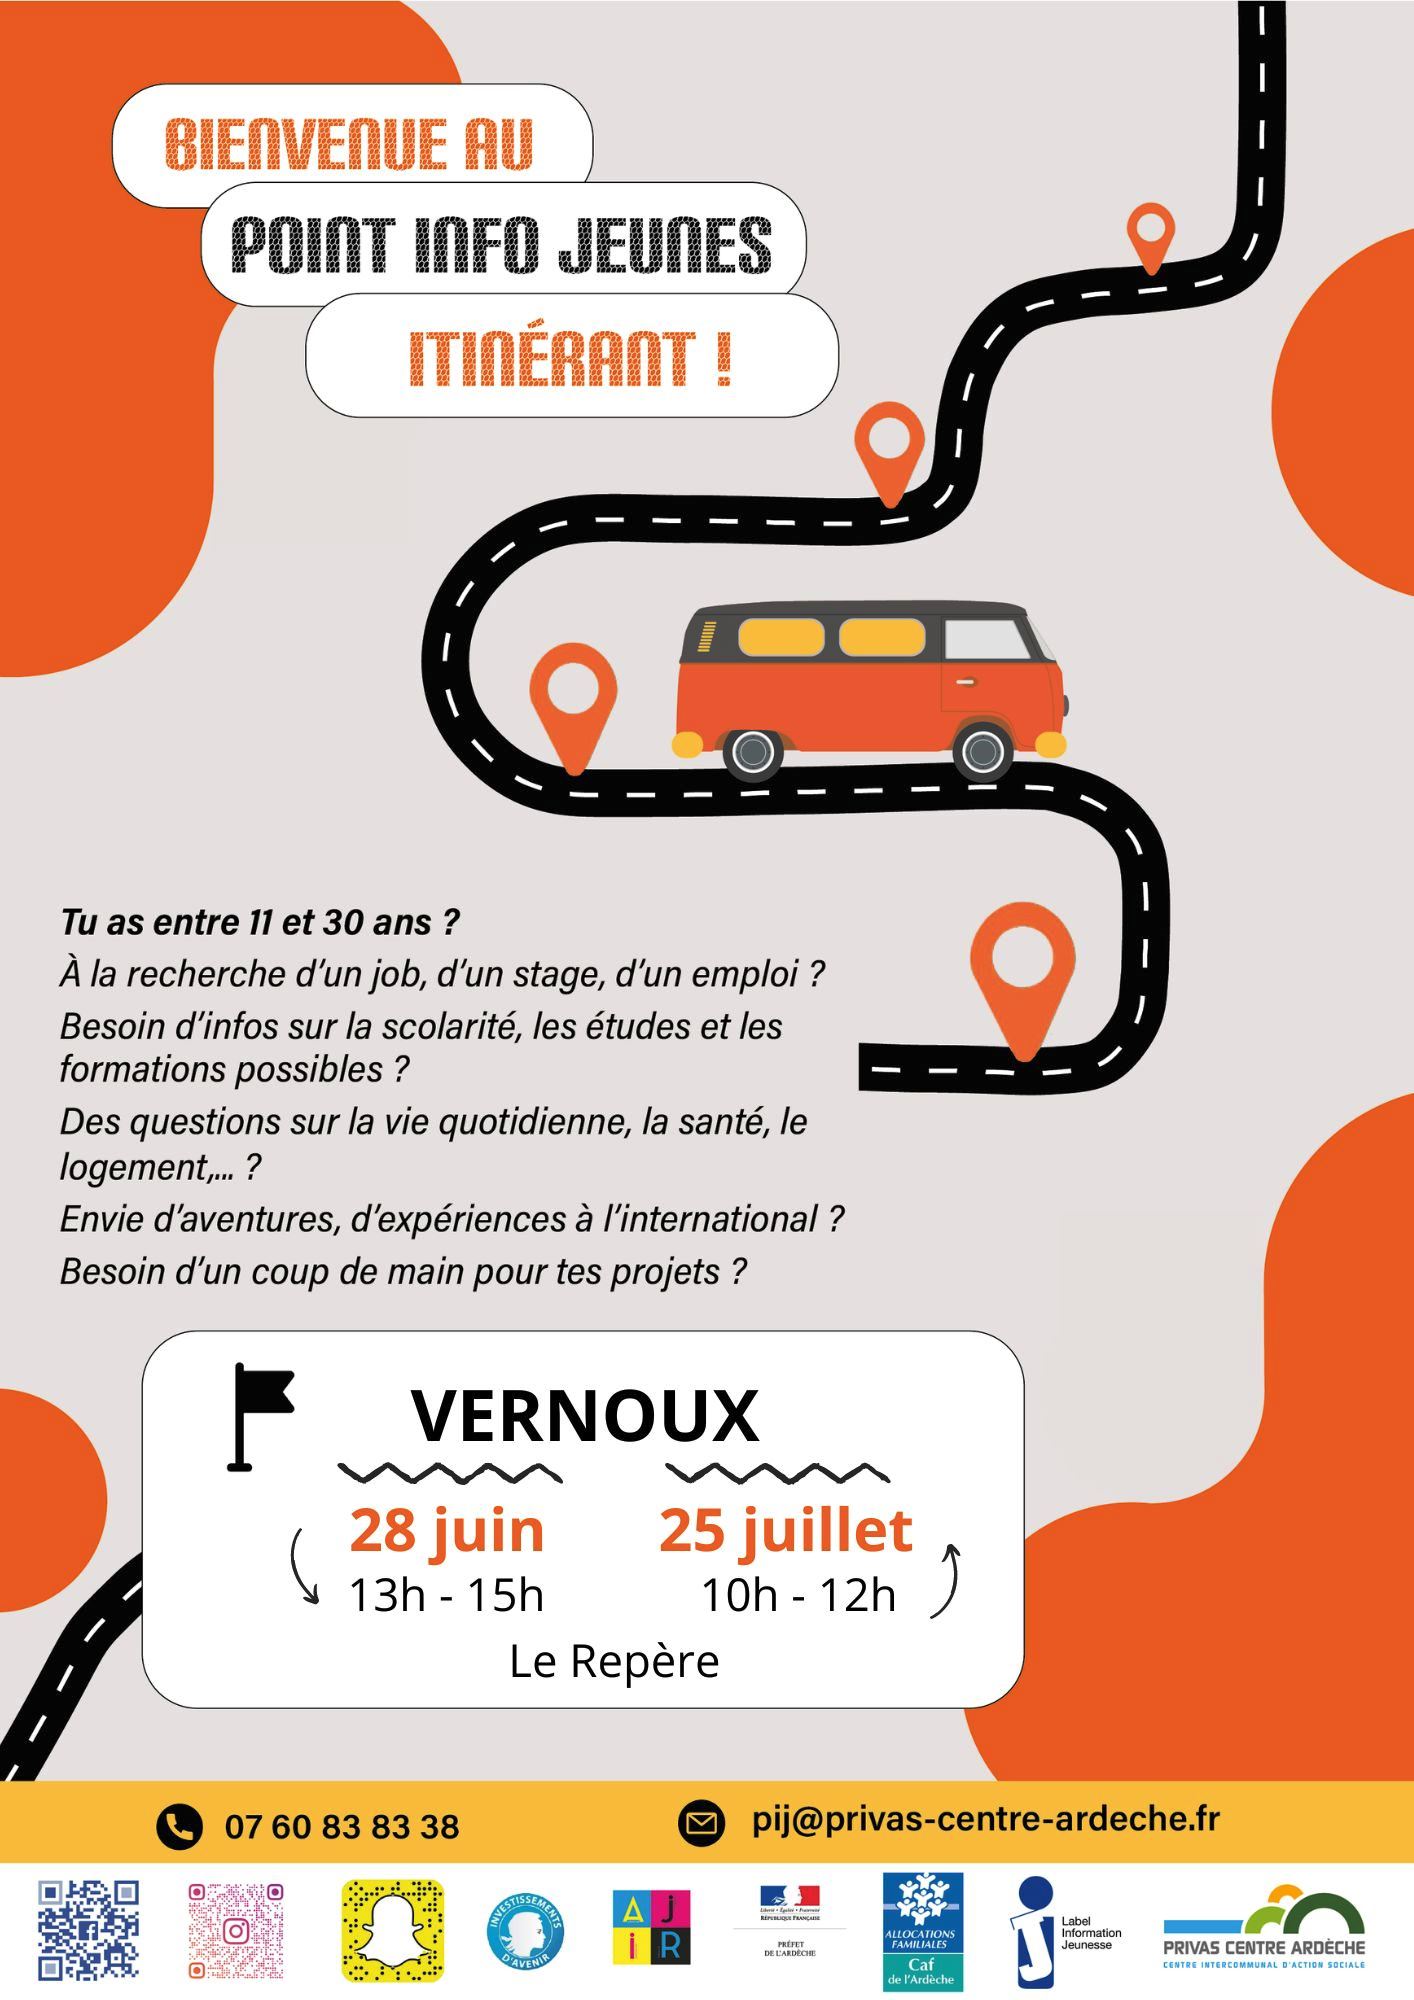 Alle leuke evenementen! : Permanence du Point Info Jeunes itinérant